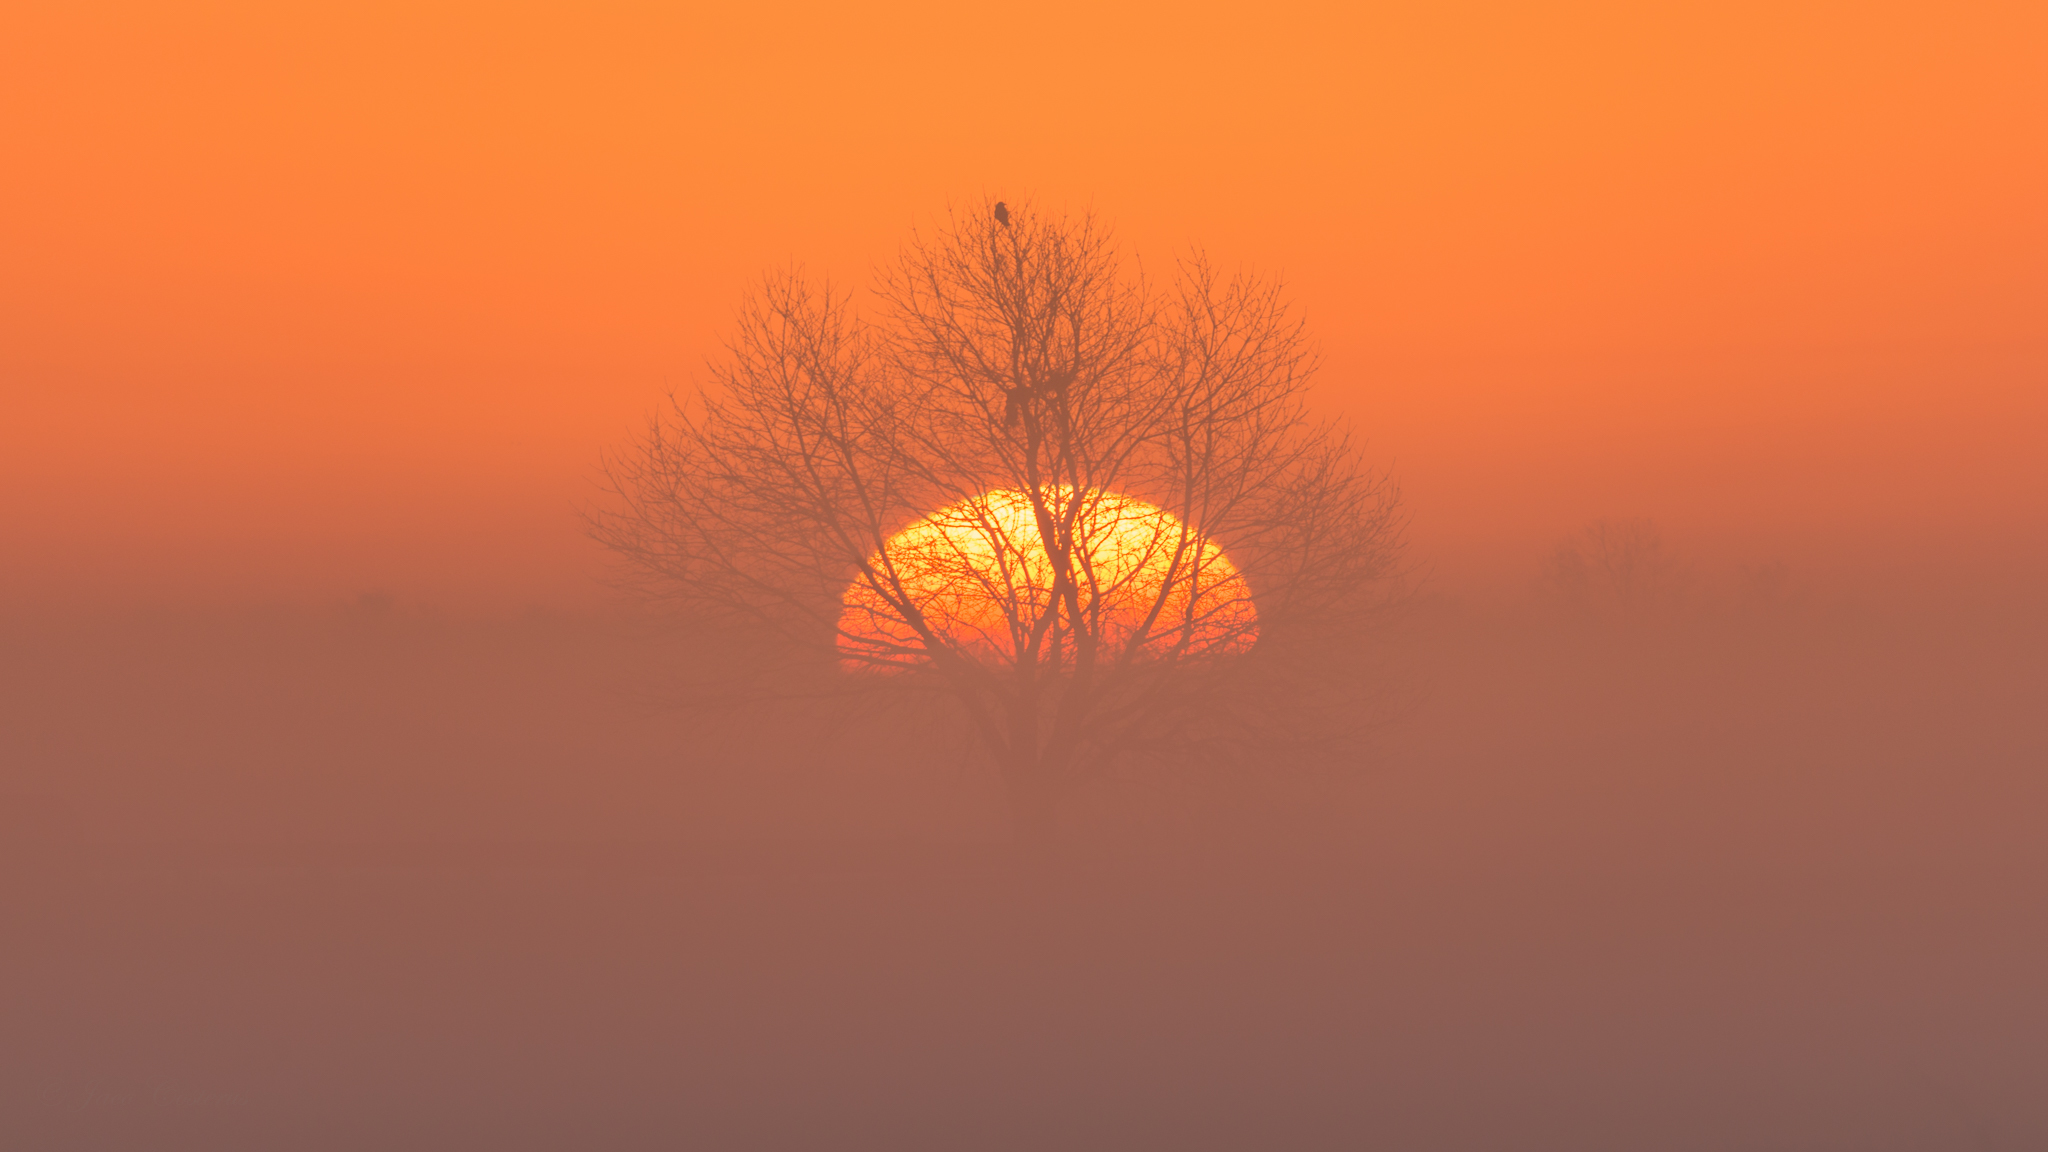 Скачать картинку Дерево, Туман, Земля/природа, Закат Солнца, Оранжевый Цвет) в телефон бесплатно.